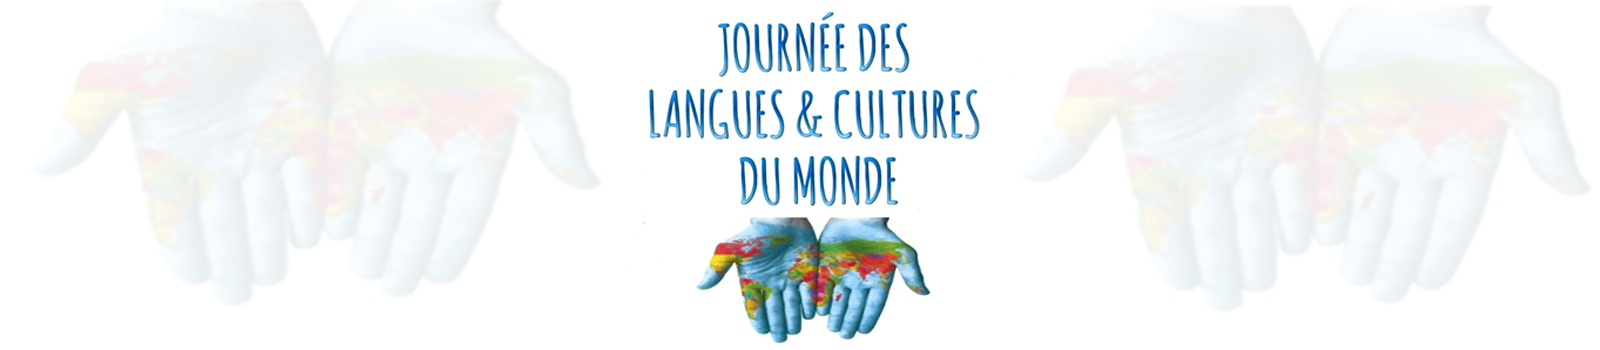 Journée des Langues et Cultures du Monde